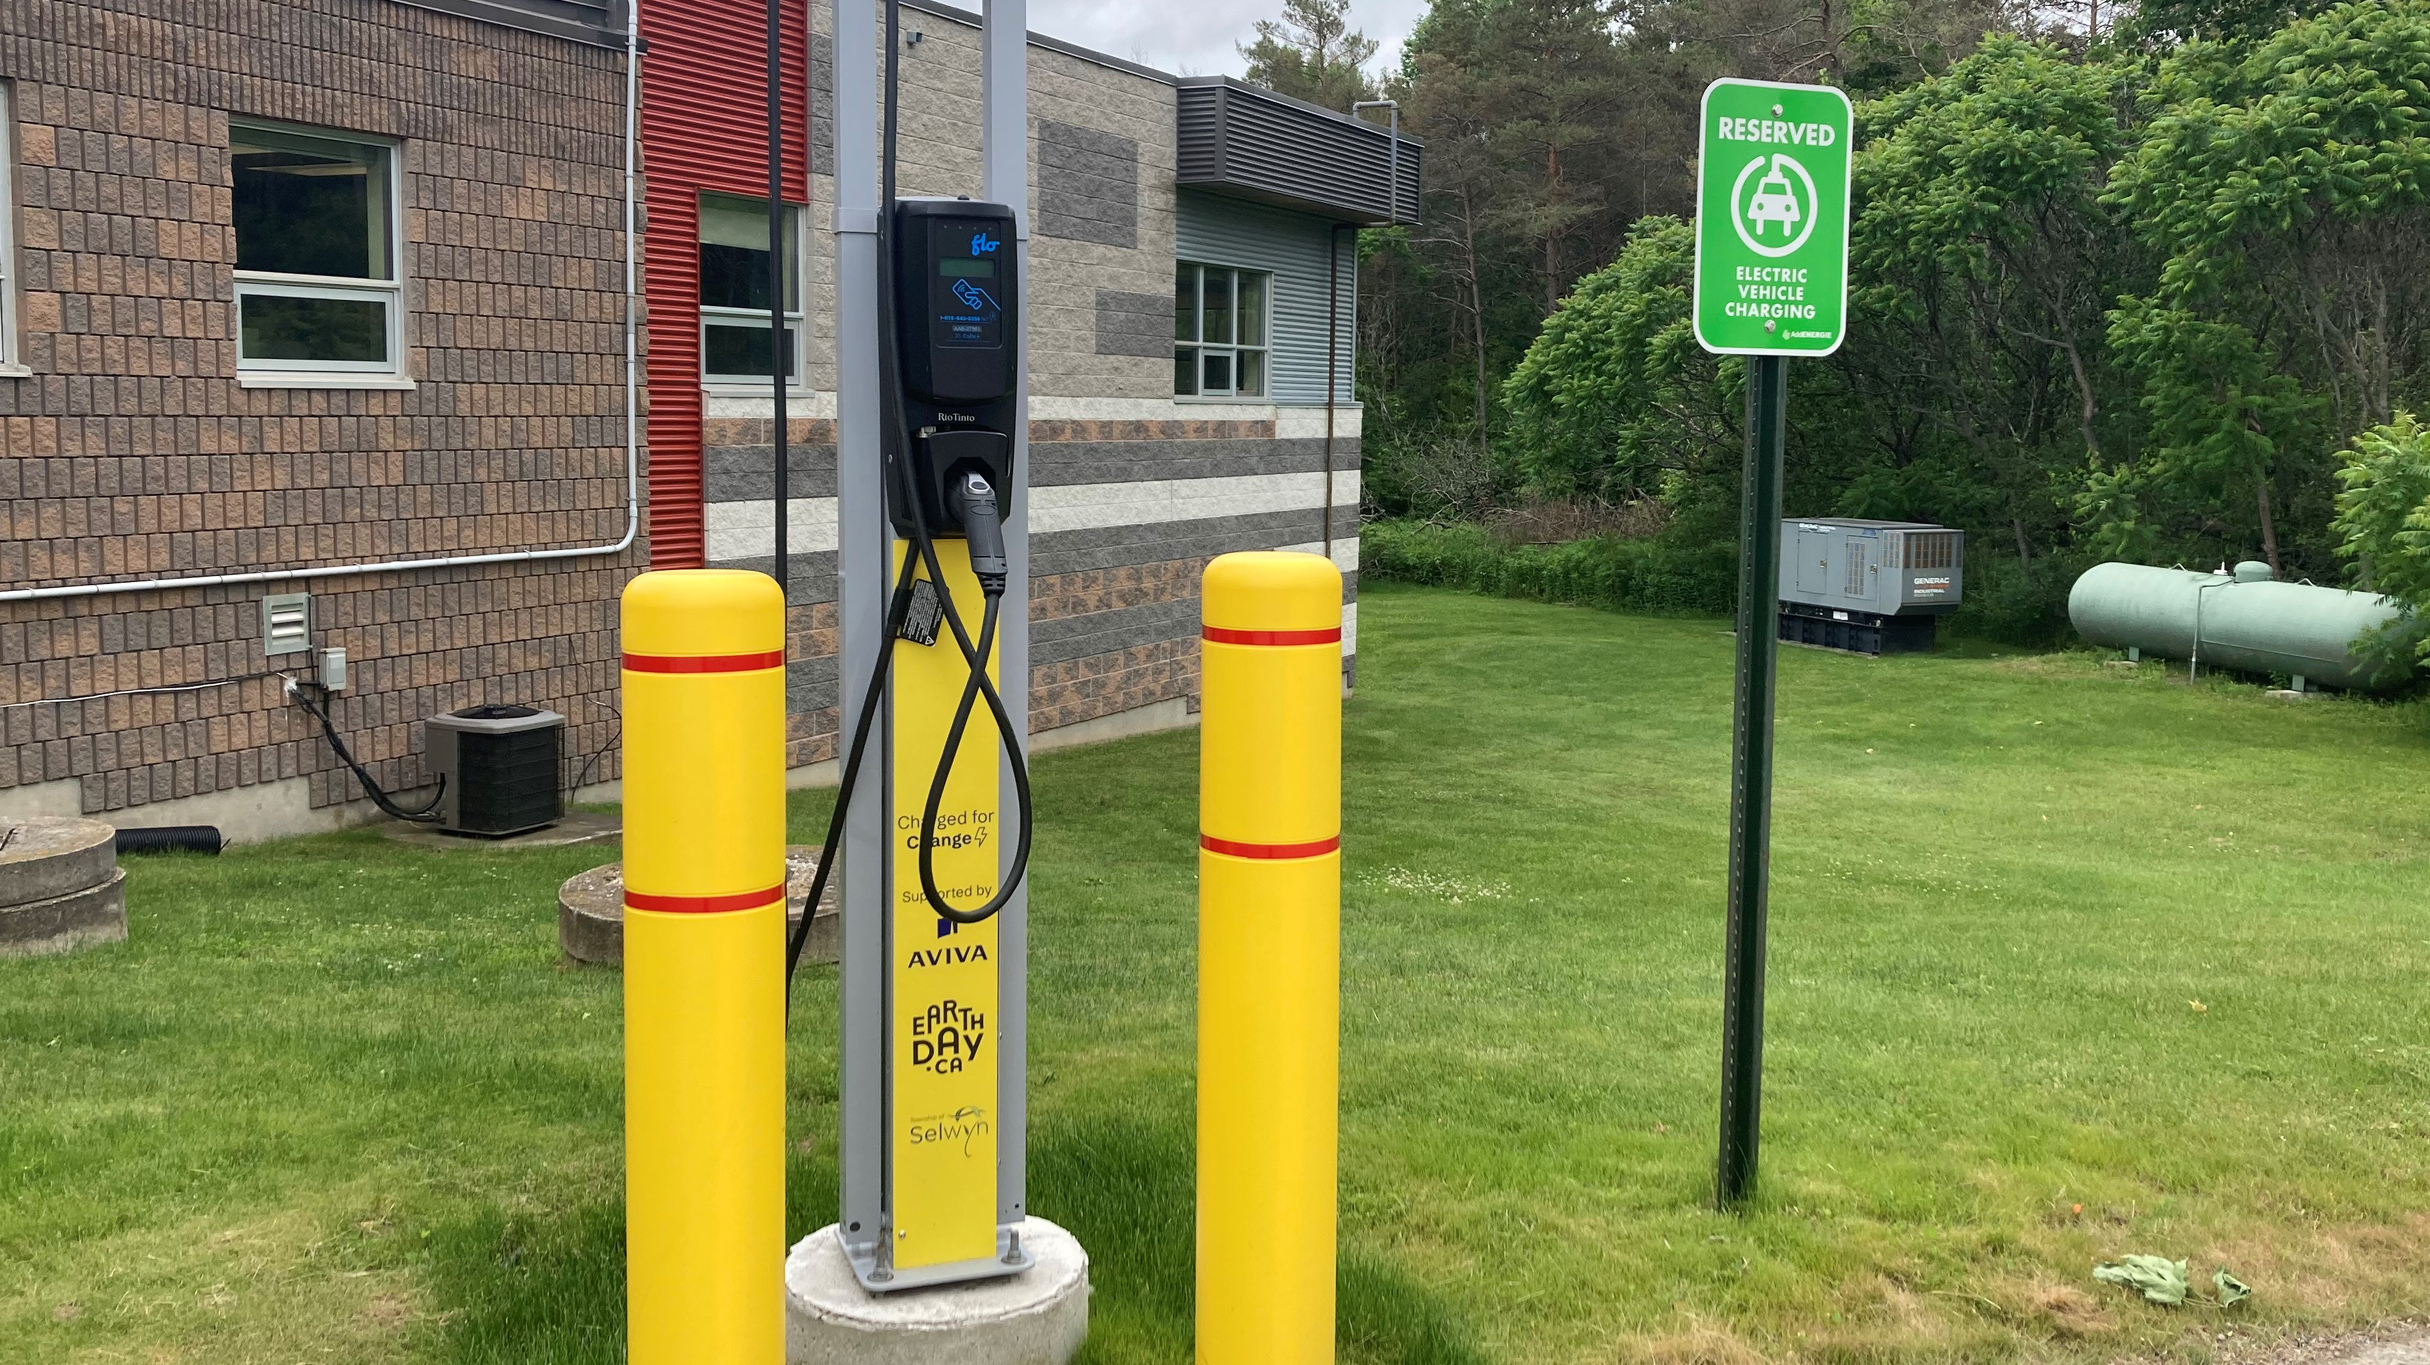 Une borne de recharge pour véhicules électriques du programme « Changez, rechargez » installée dans le canton de Selwyn, Ontario. Photo : gracieuseté du canton de Selwyn.